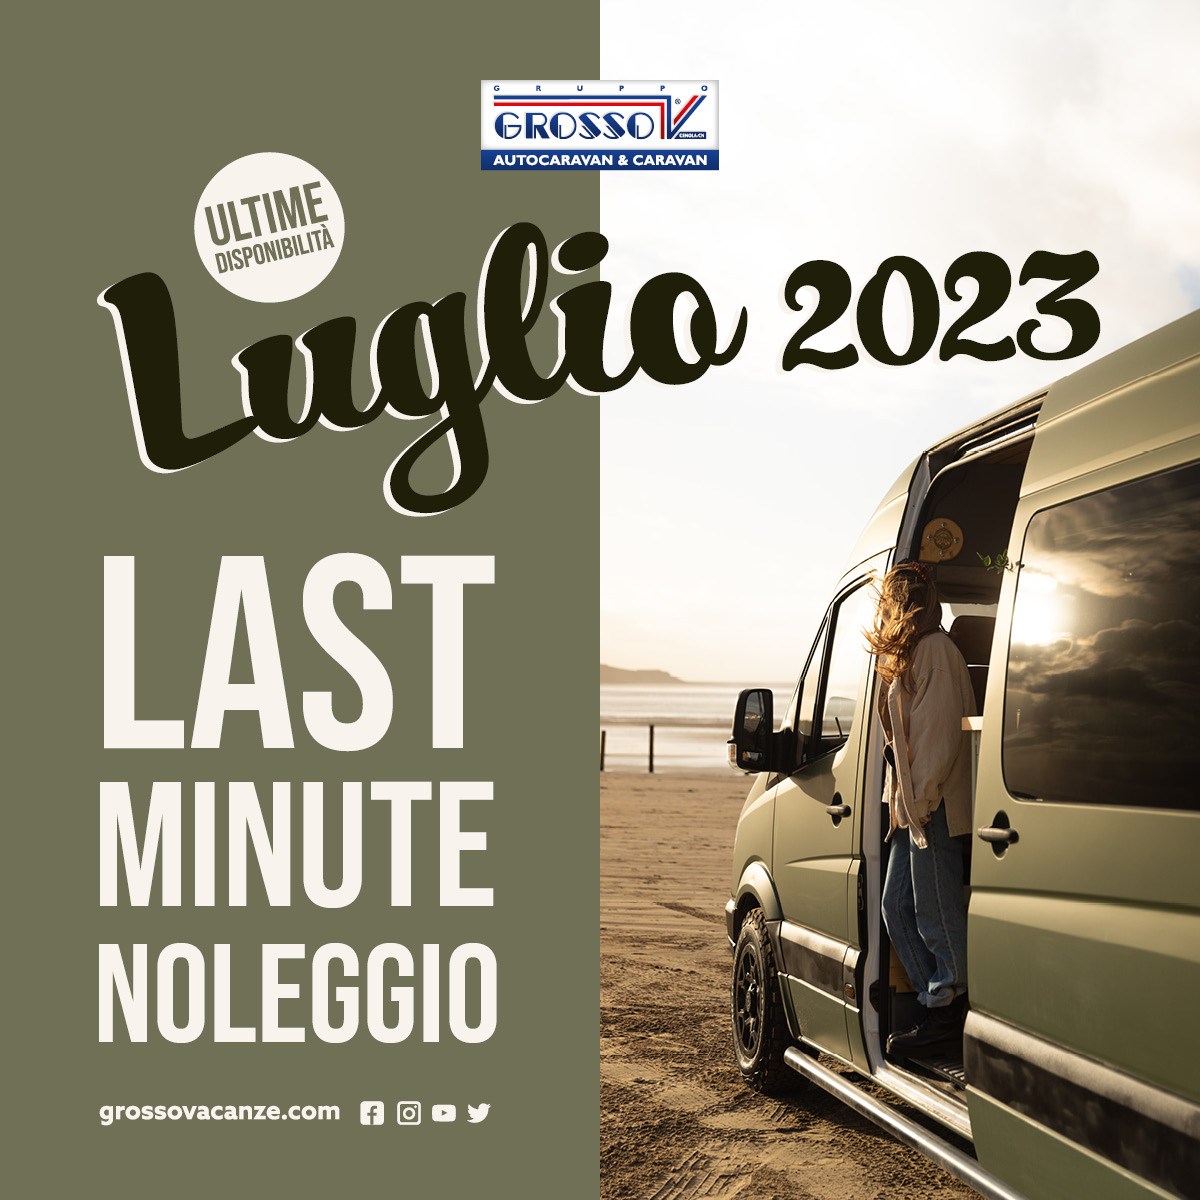 Noleggio - Last minute